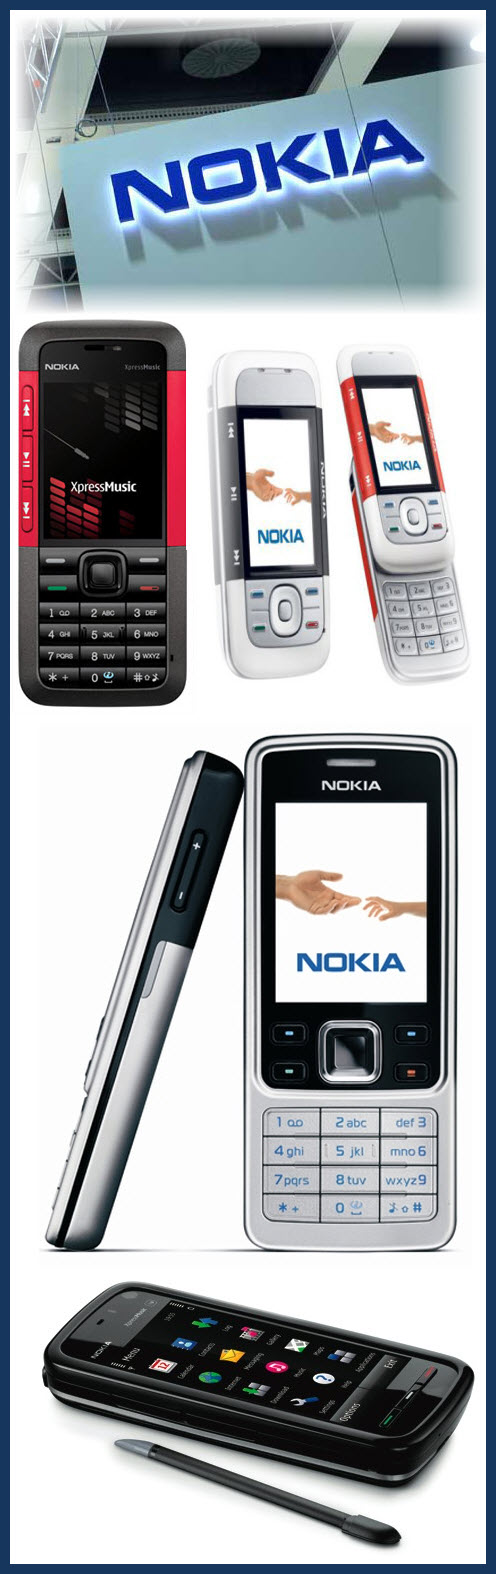 Celulares Nokia